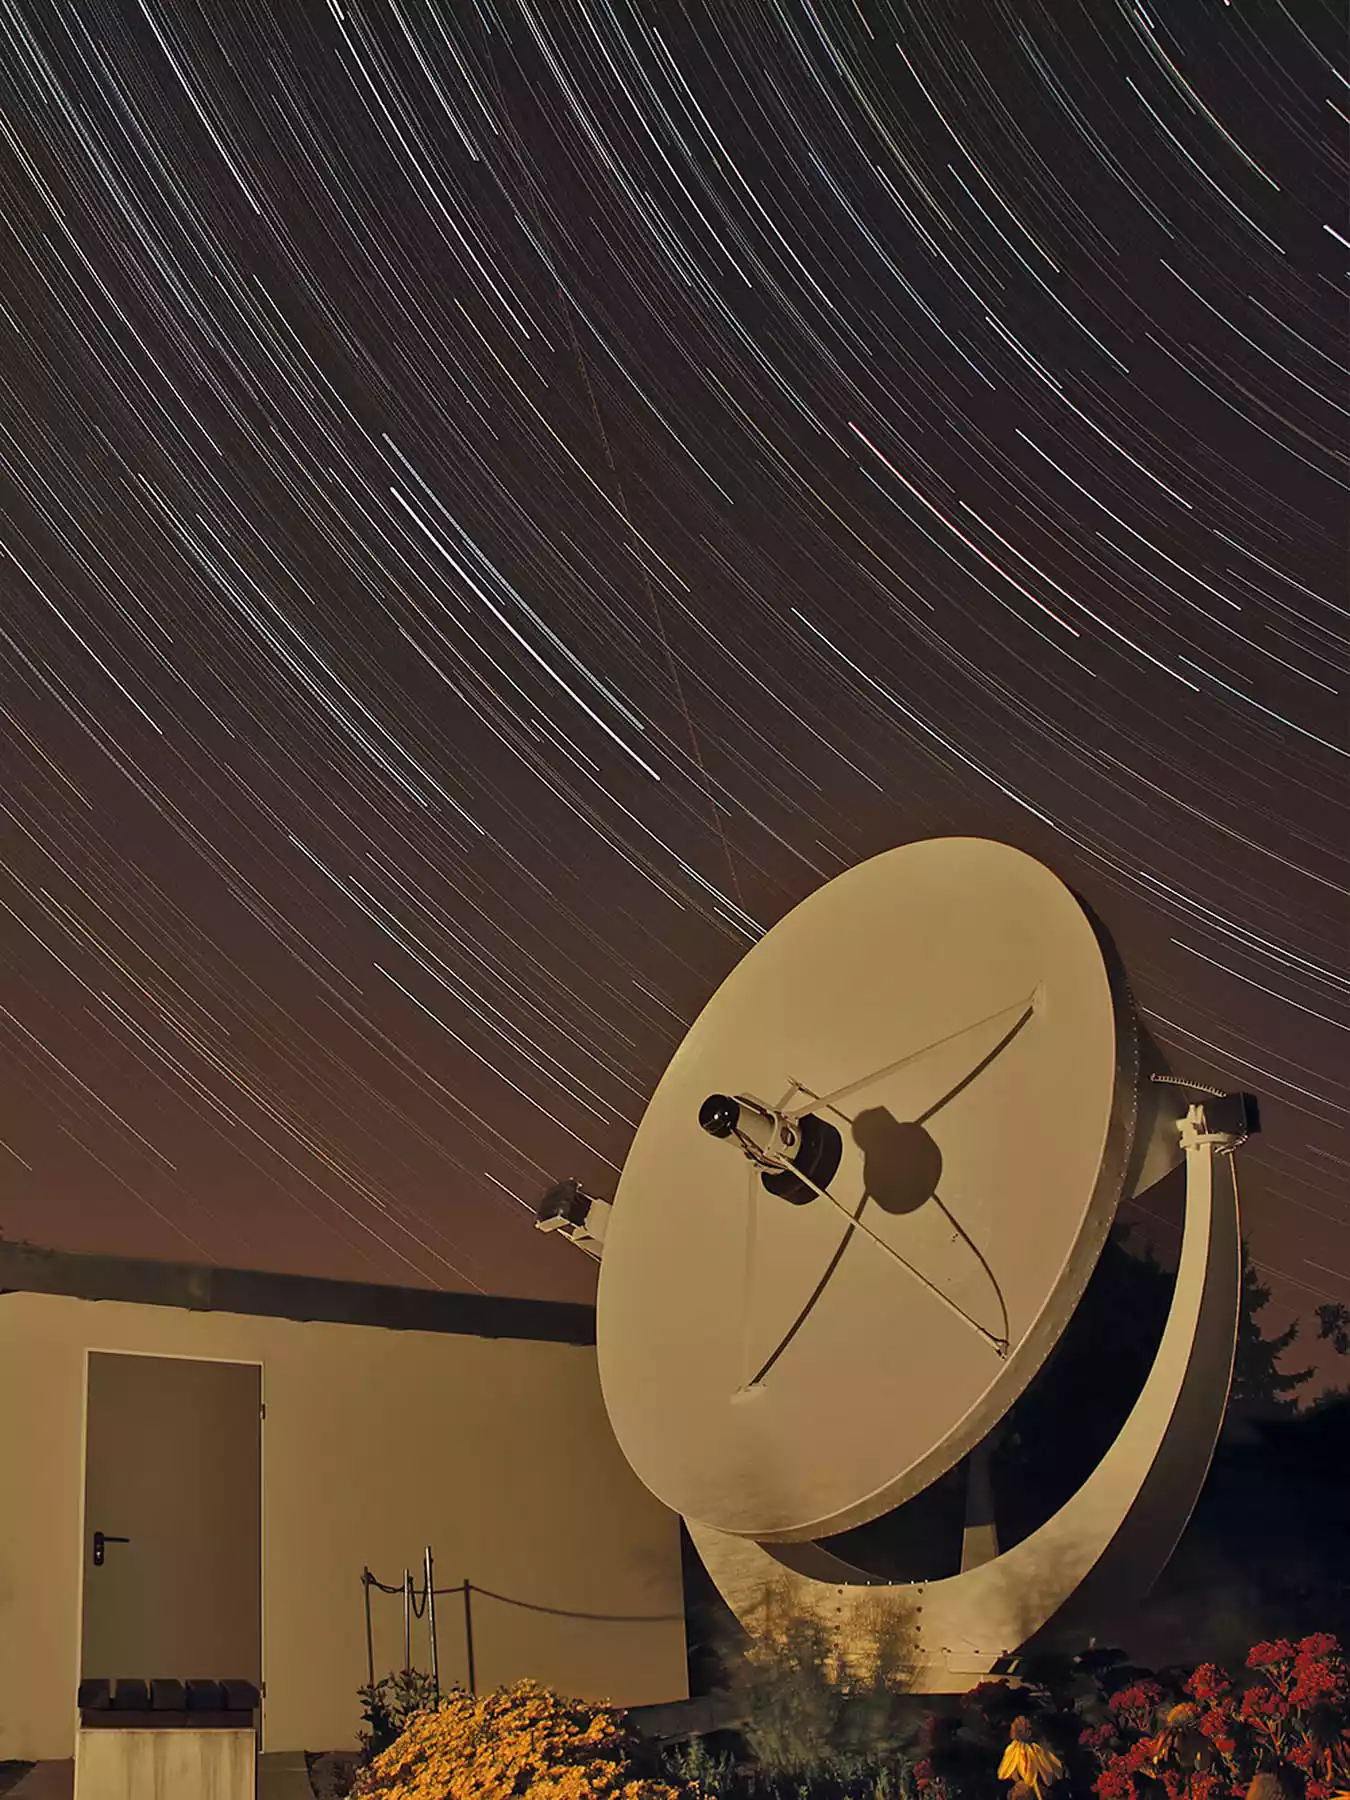 Radioteleskop der Sternwarte Radebeul bei Nacht mit Sternspuren am Himmel durch Langzeitbelichtung